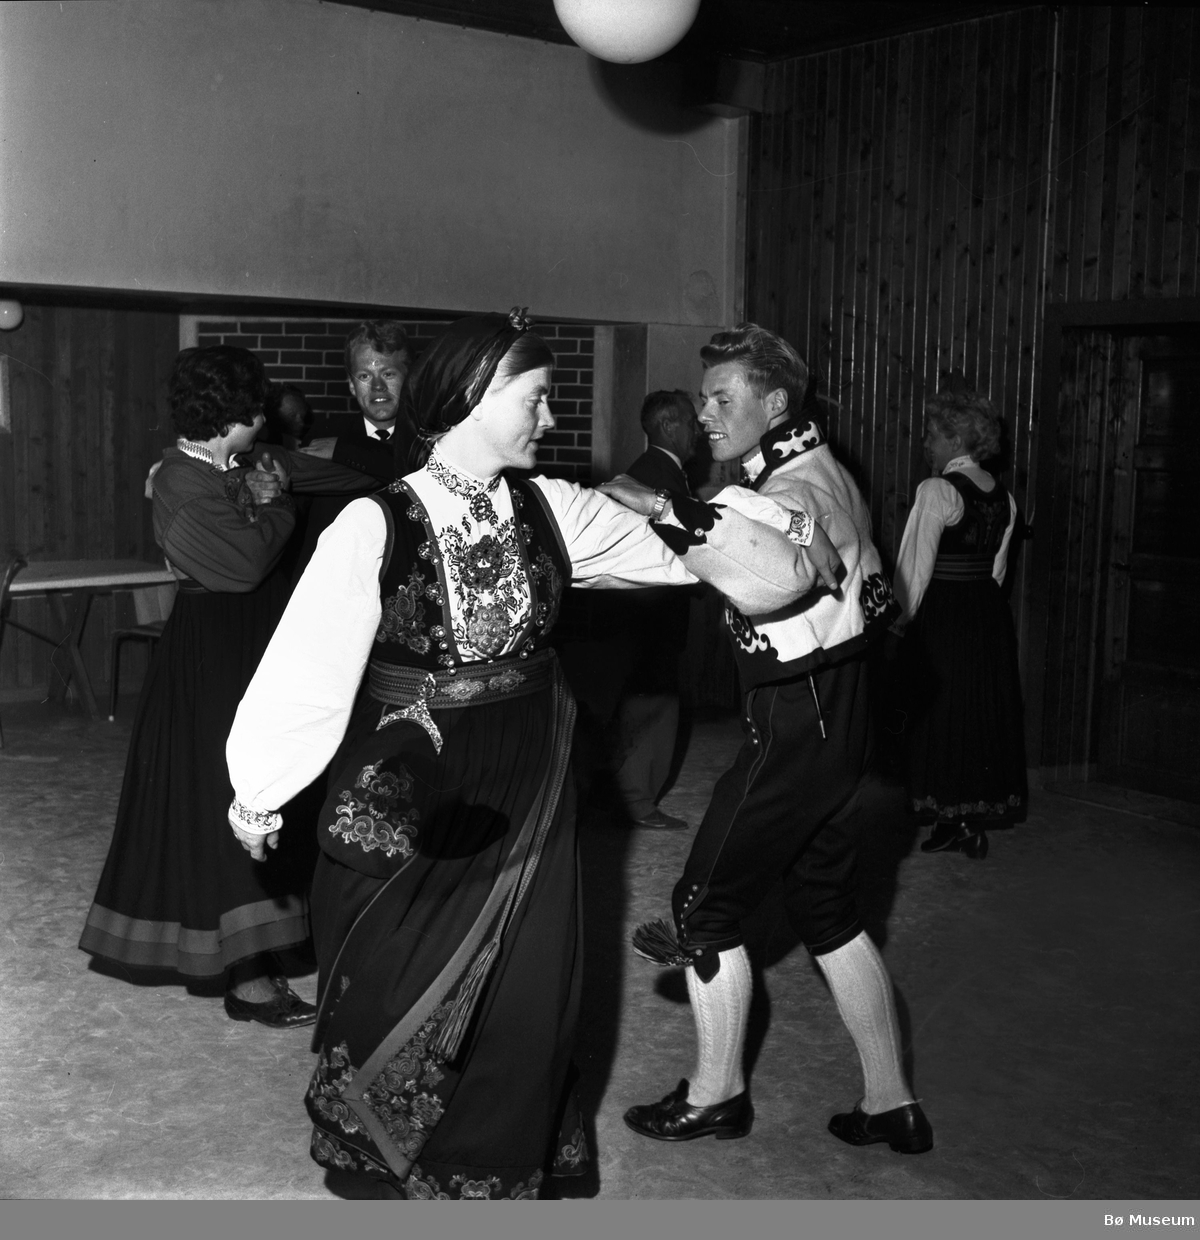 Frå ein kappleik i Bø i 1964 (ukjente dansarar)
(foto: Varden)